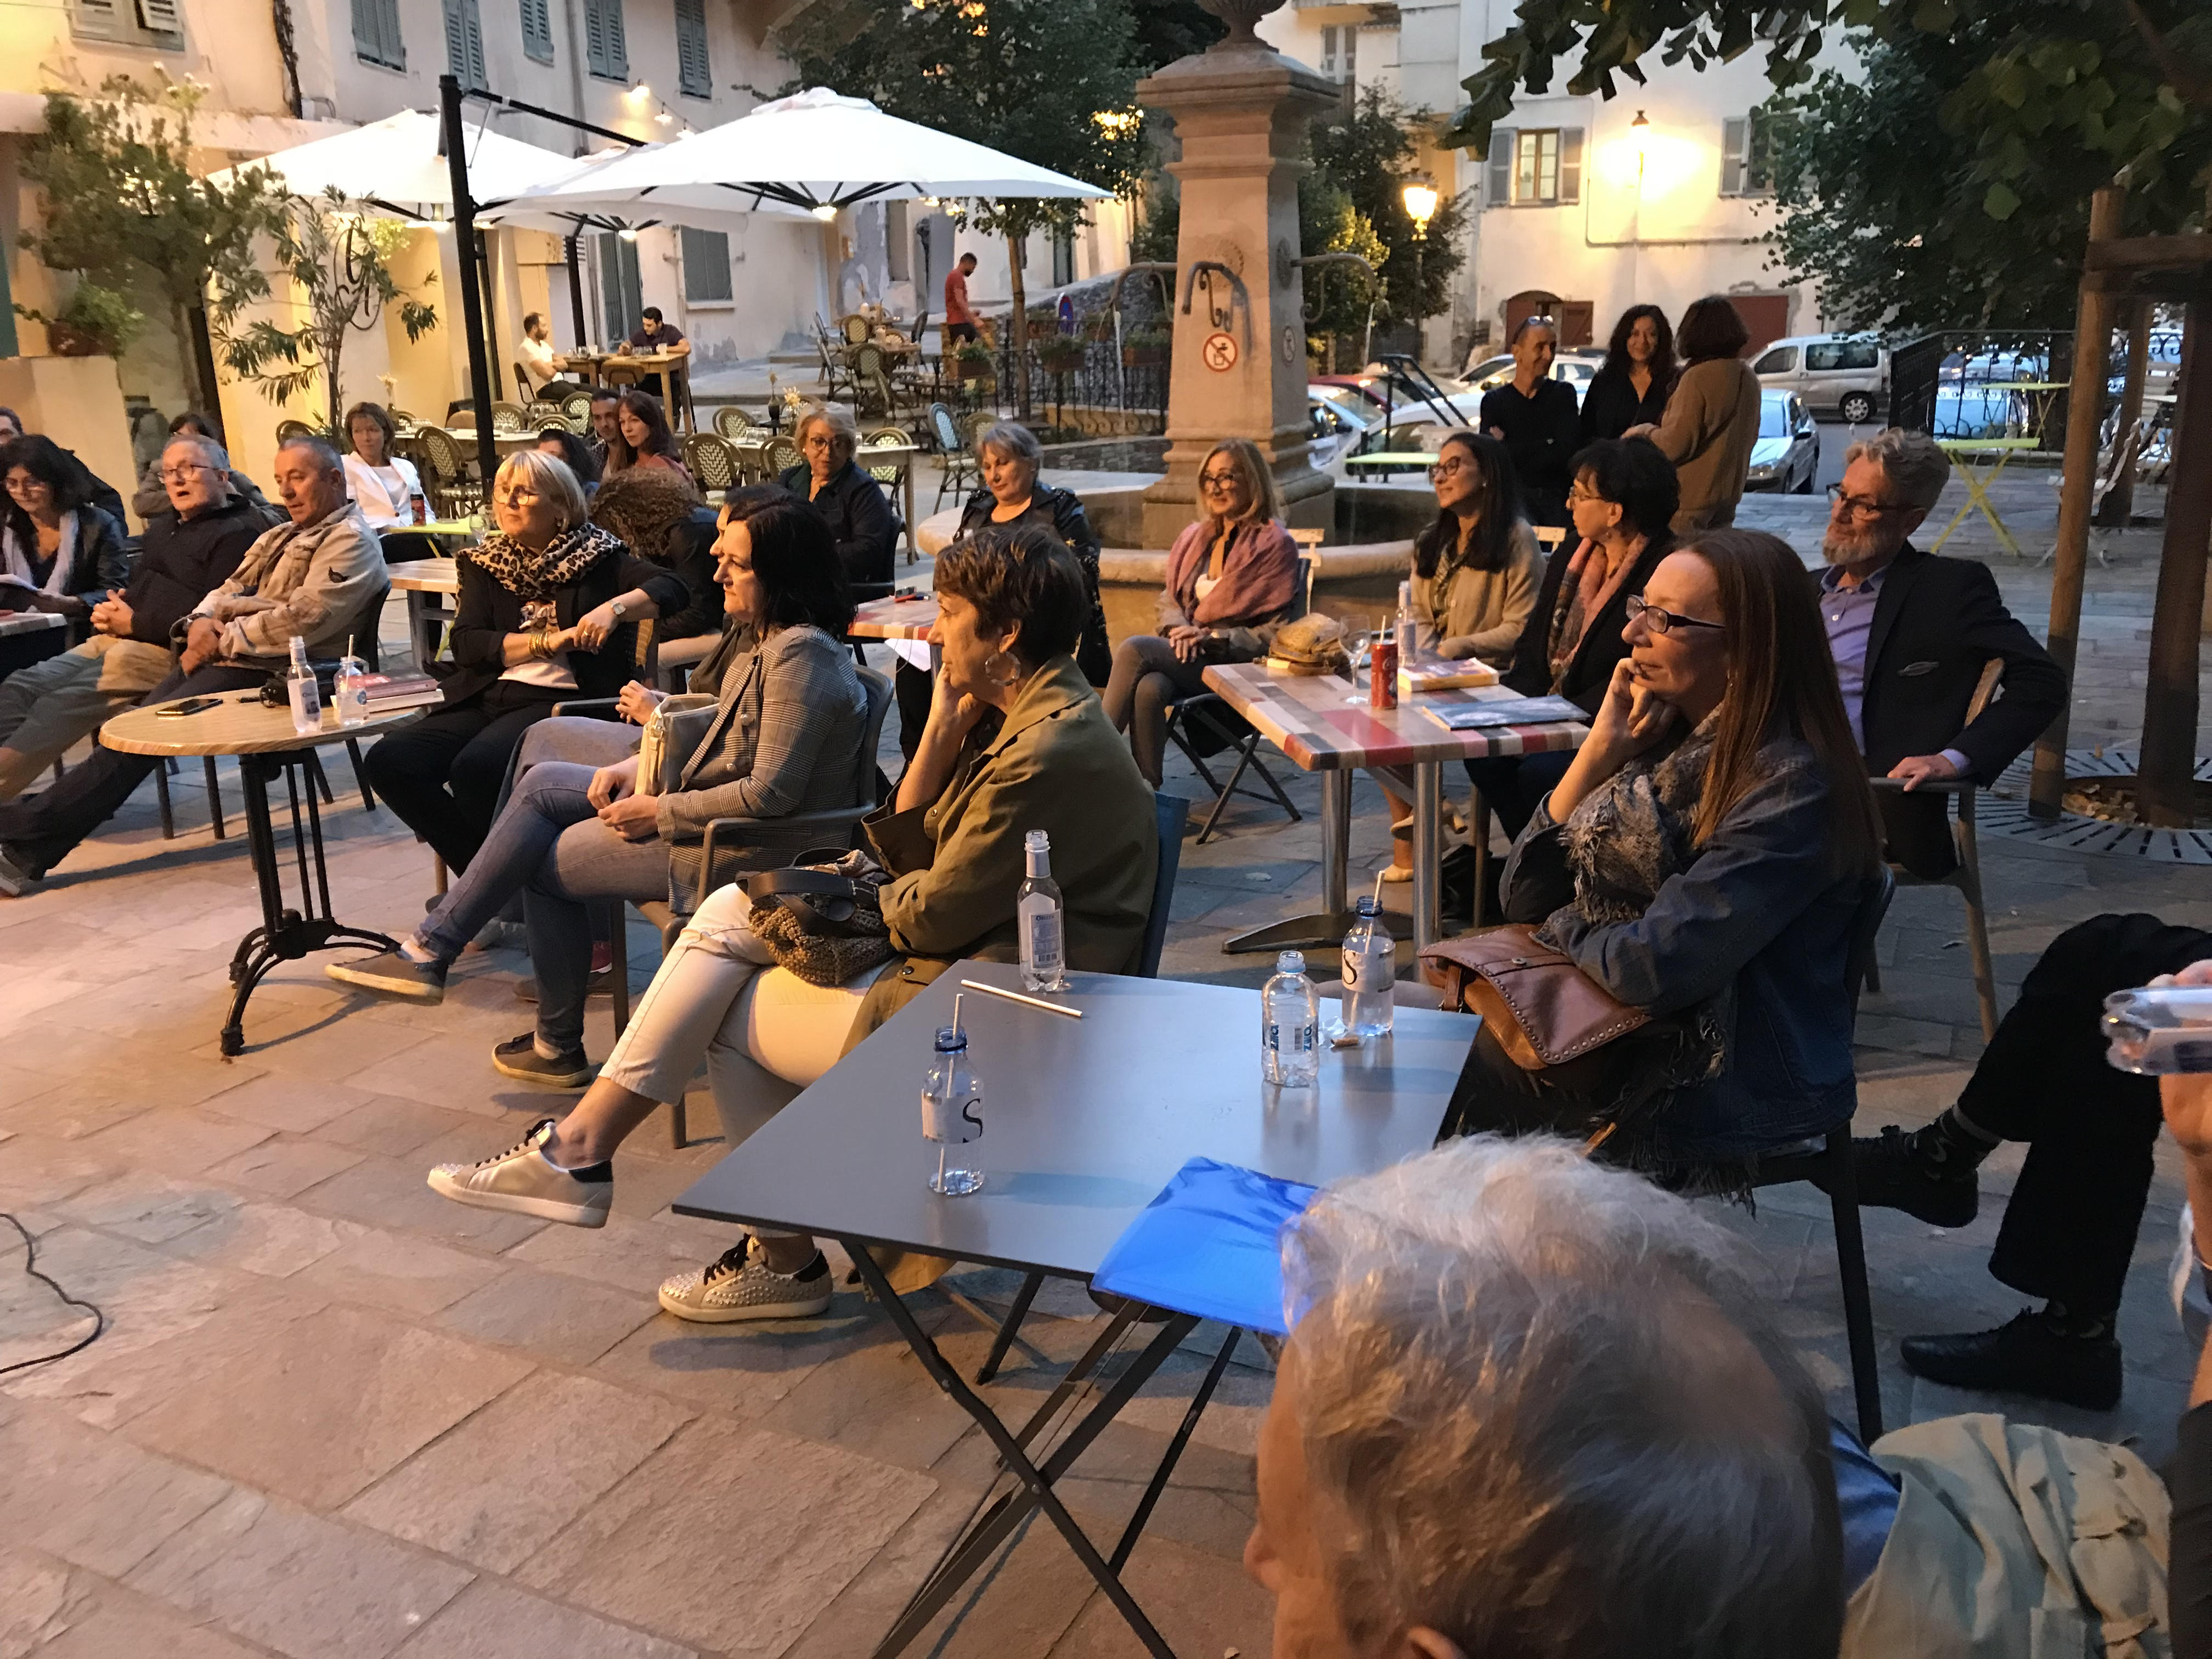 Bastia : au bonheur d’un apéritif littéraire